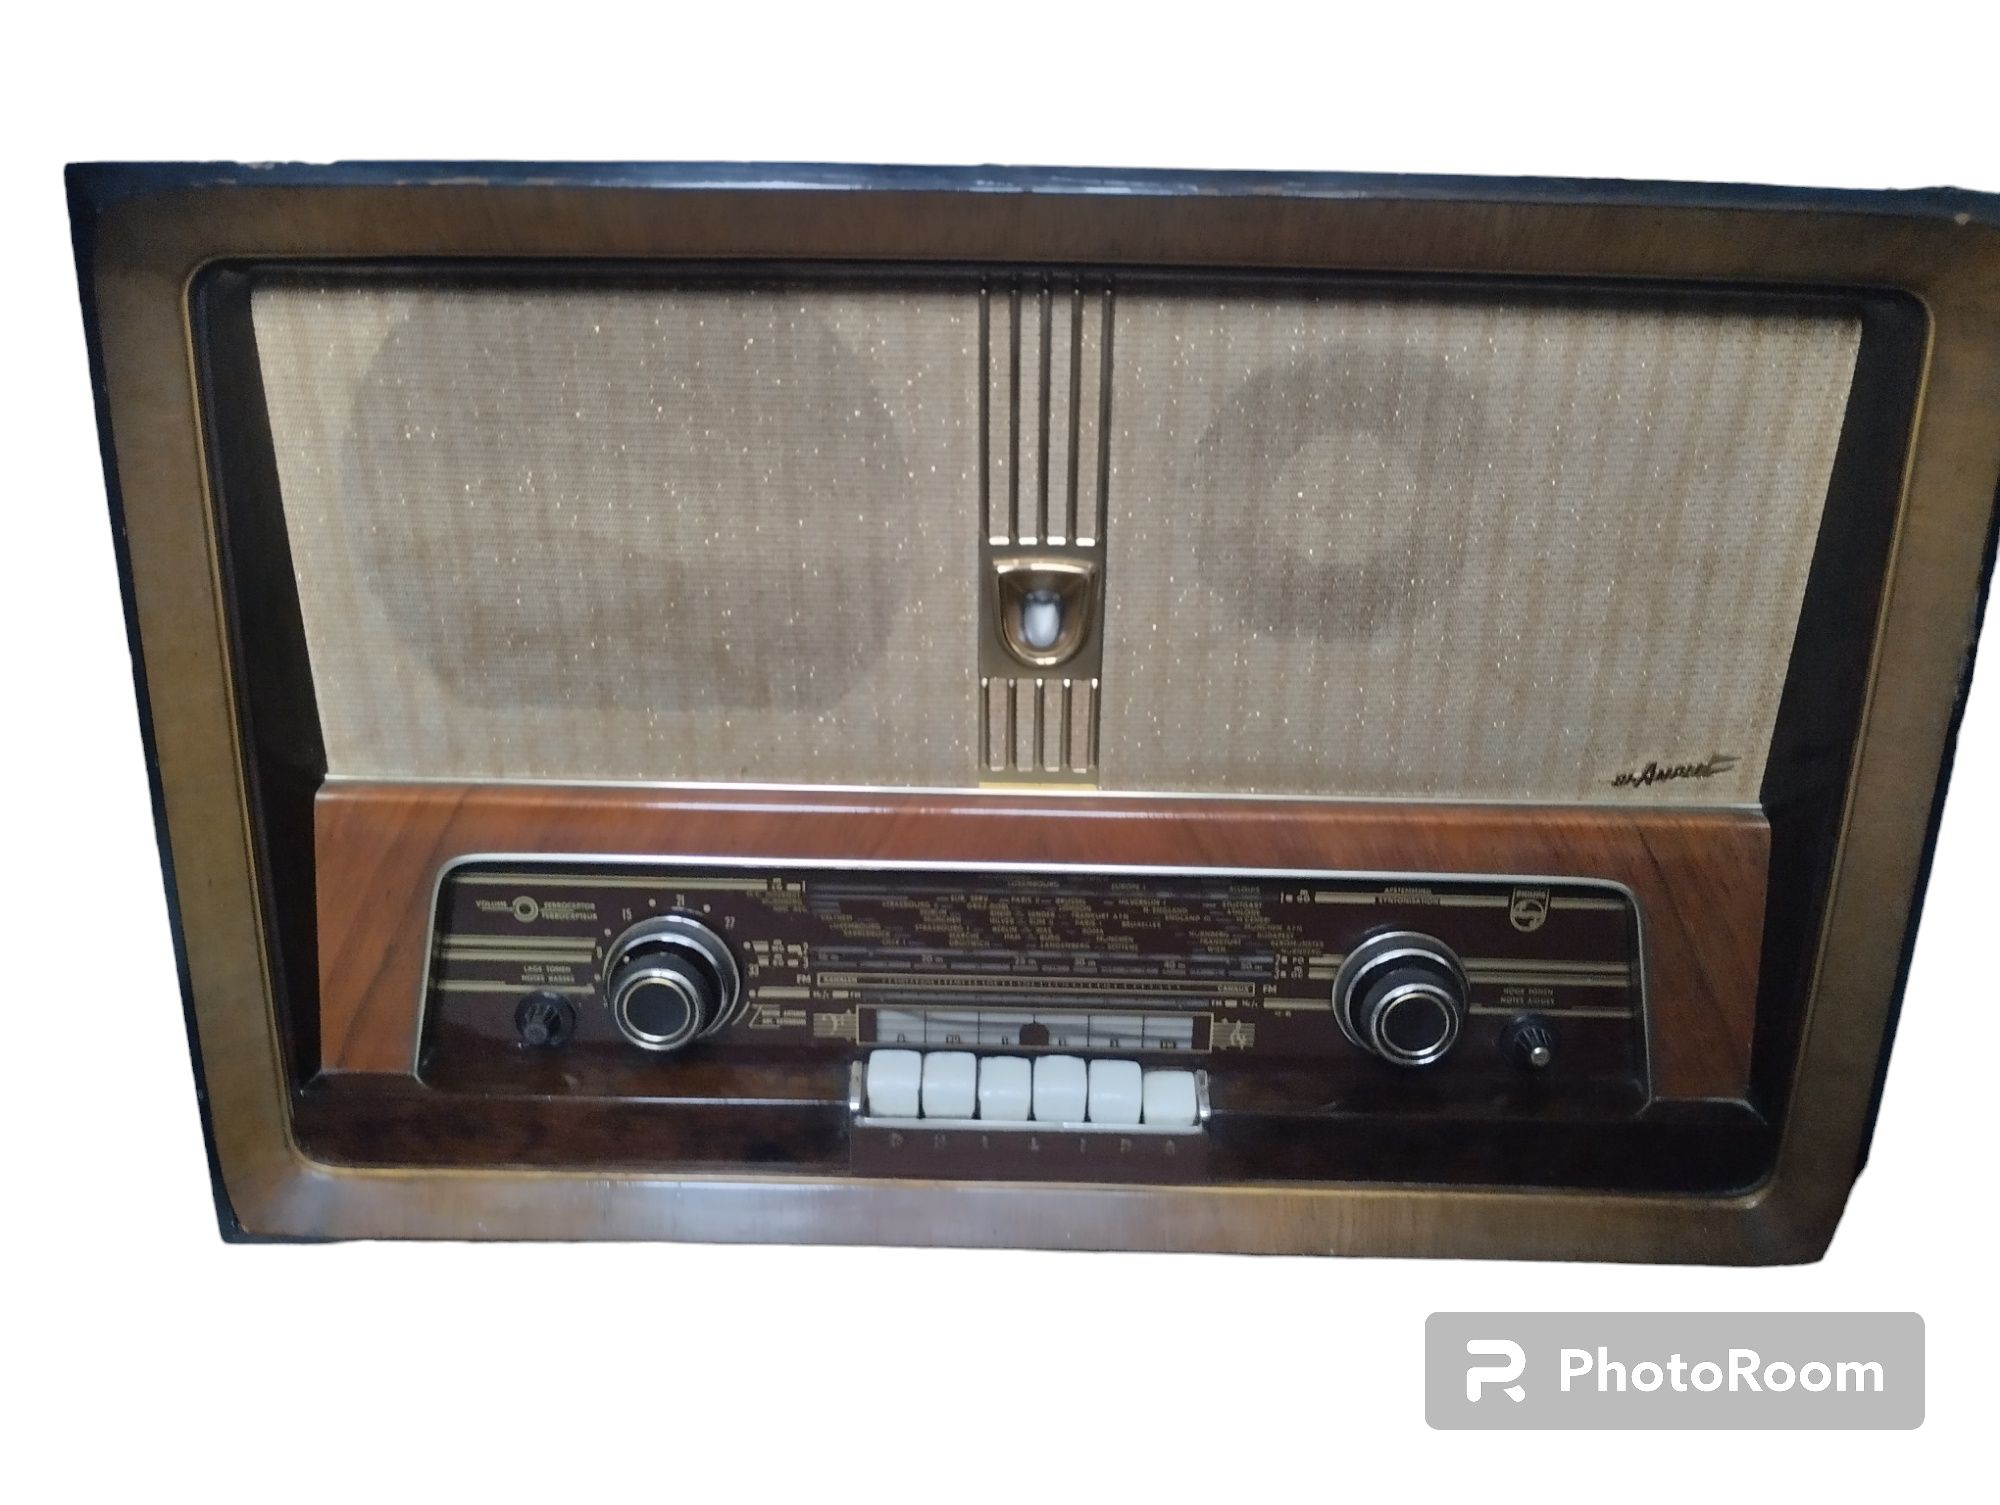 Radio Philips lata 50